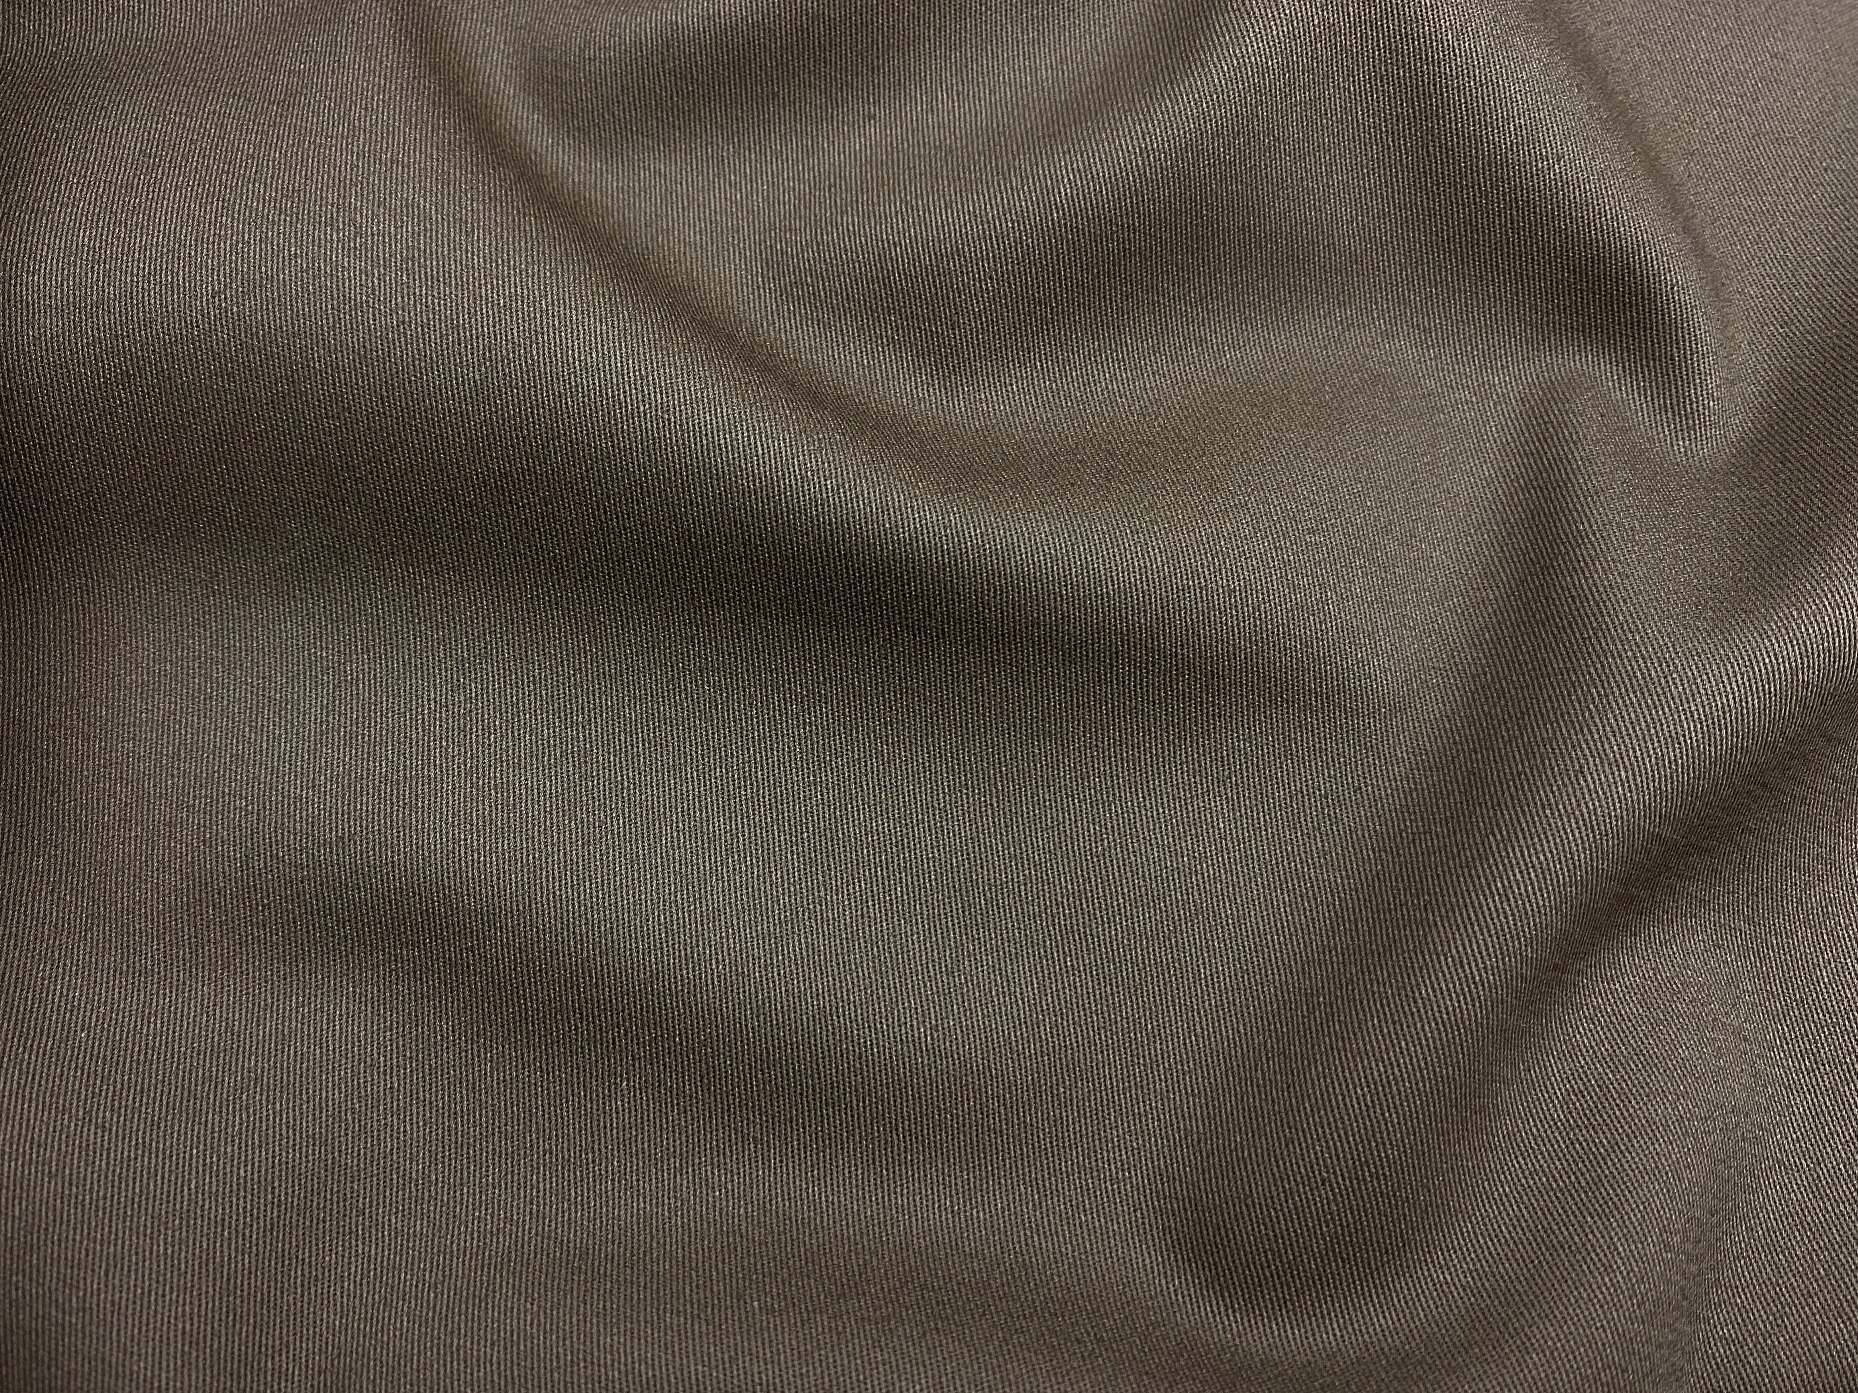 Ткань Хлопок  серо-коричневого цвета однотонная 16845 2